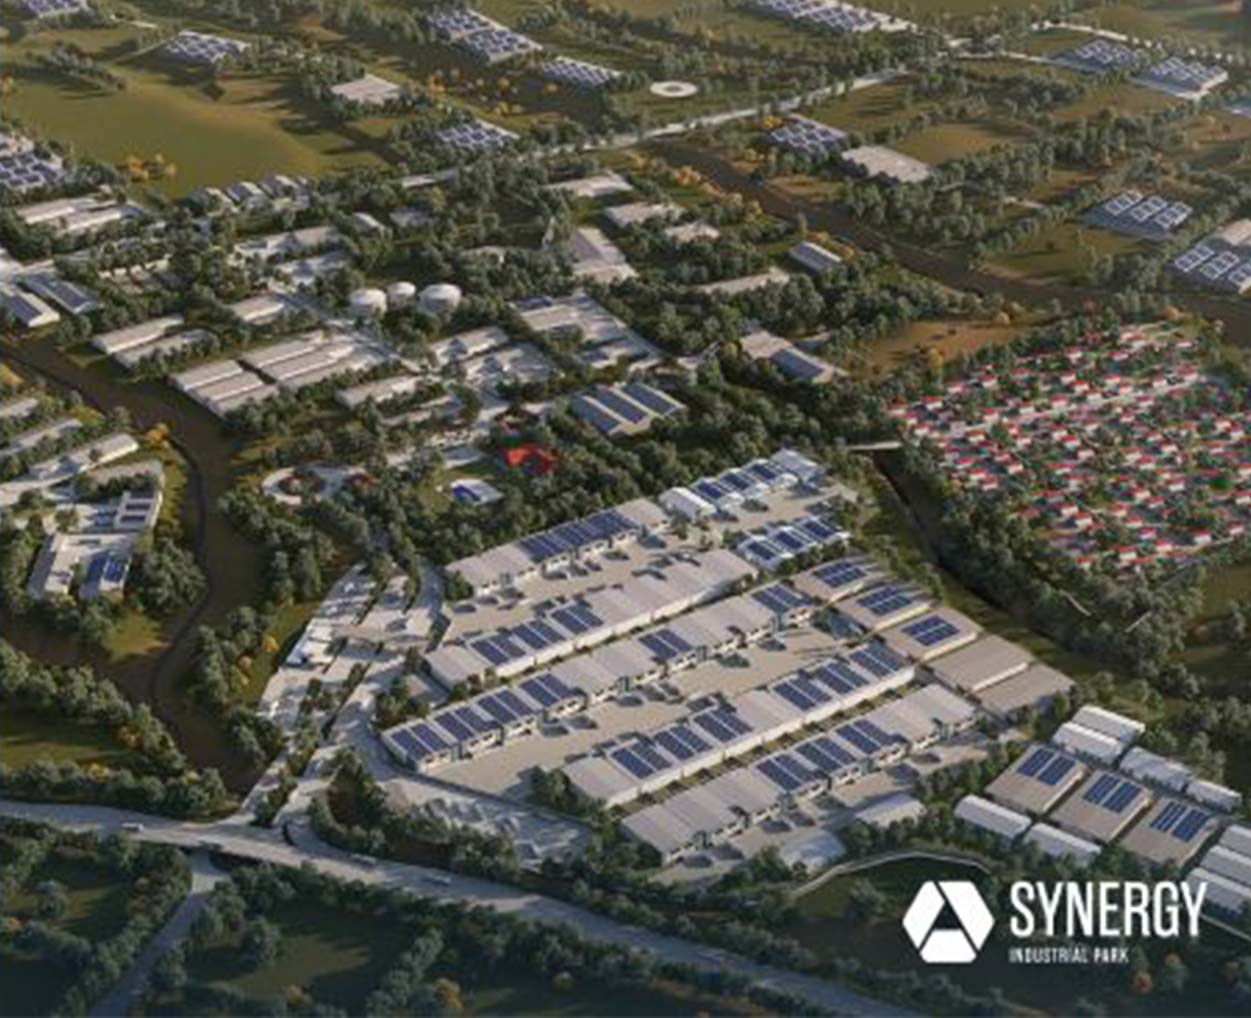 Synergy Industrial Park